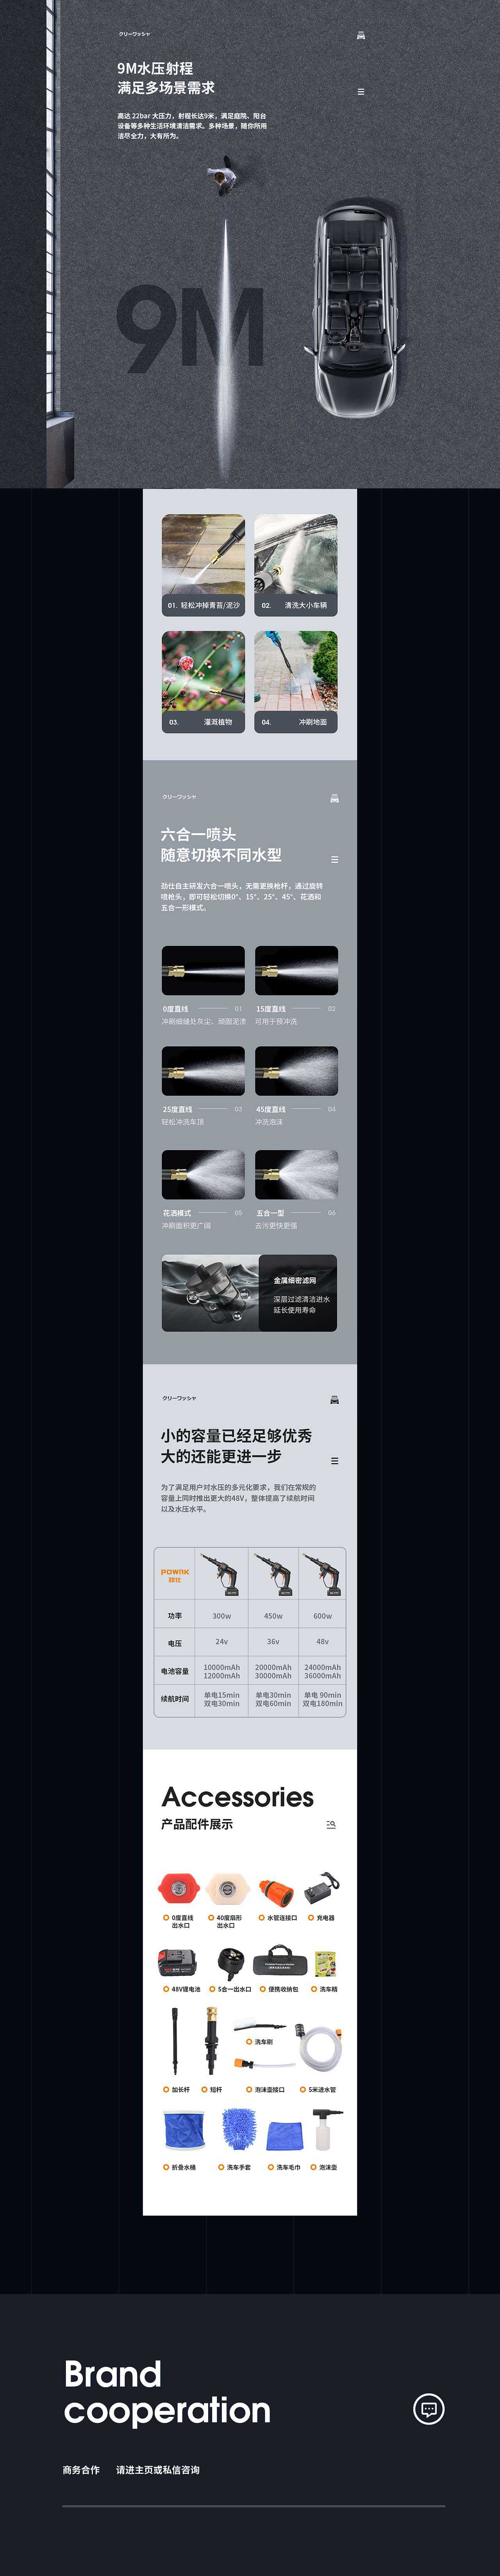 X3 洗车枪 详情页渲染+设计全案  汽车用品 数码电器